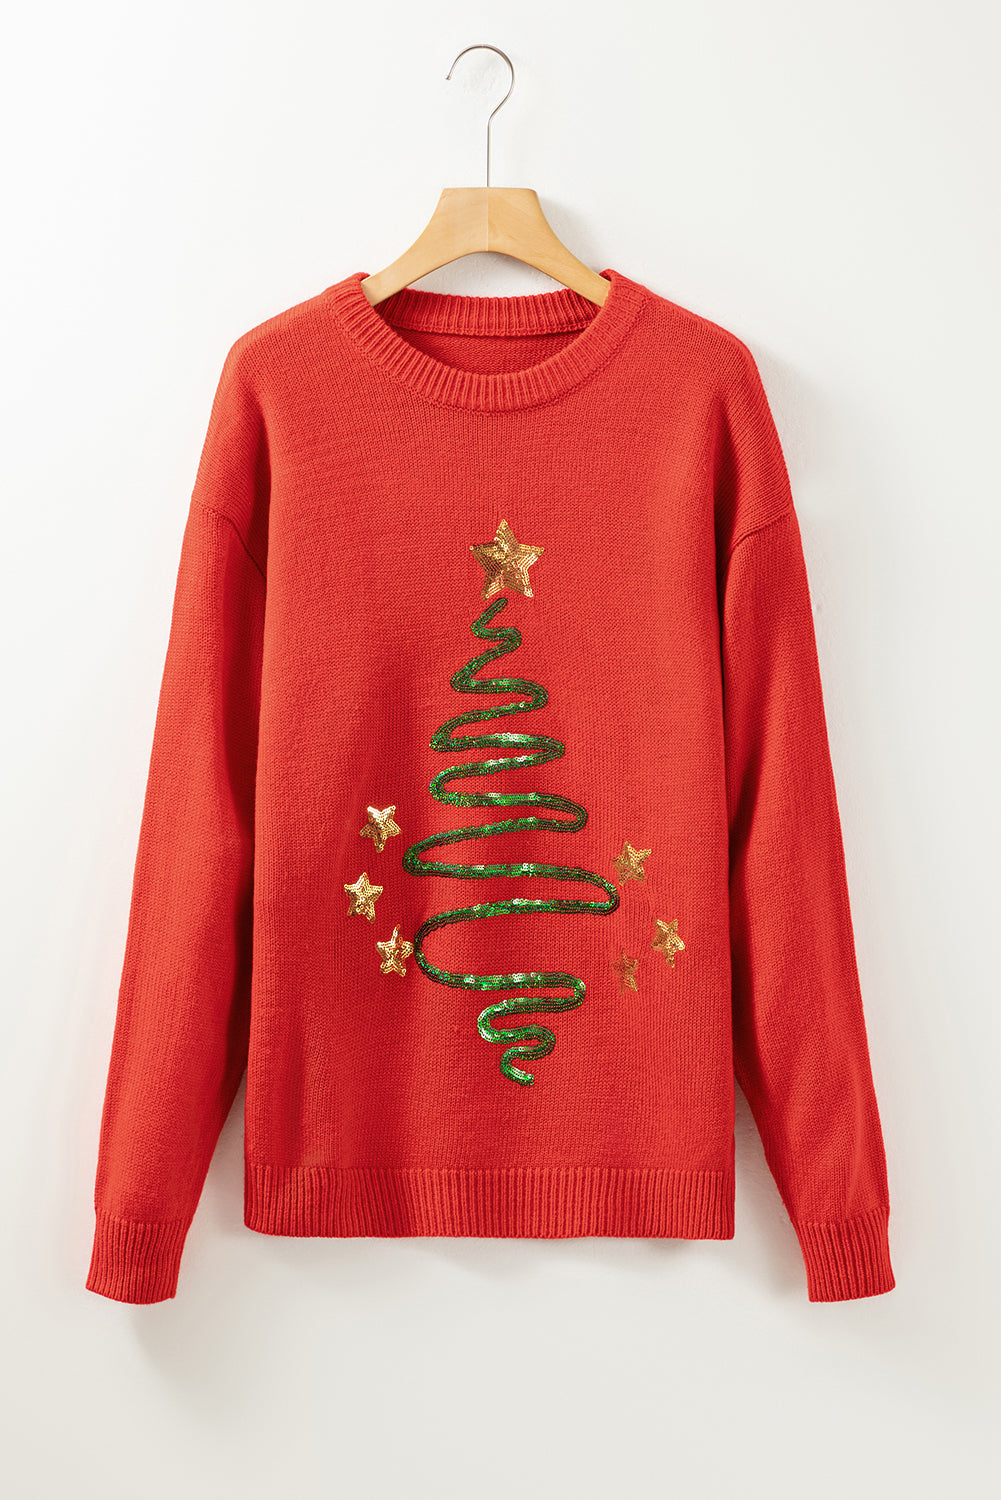 Feurig roter, mit Pailletten besetzter Weihnachtsbaum-Pullover mit überschnittener Schulter